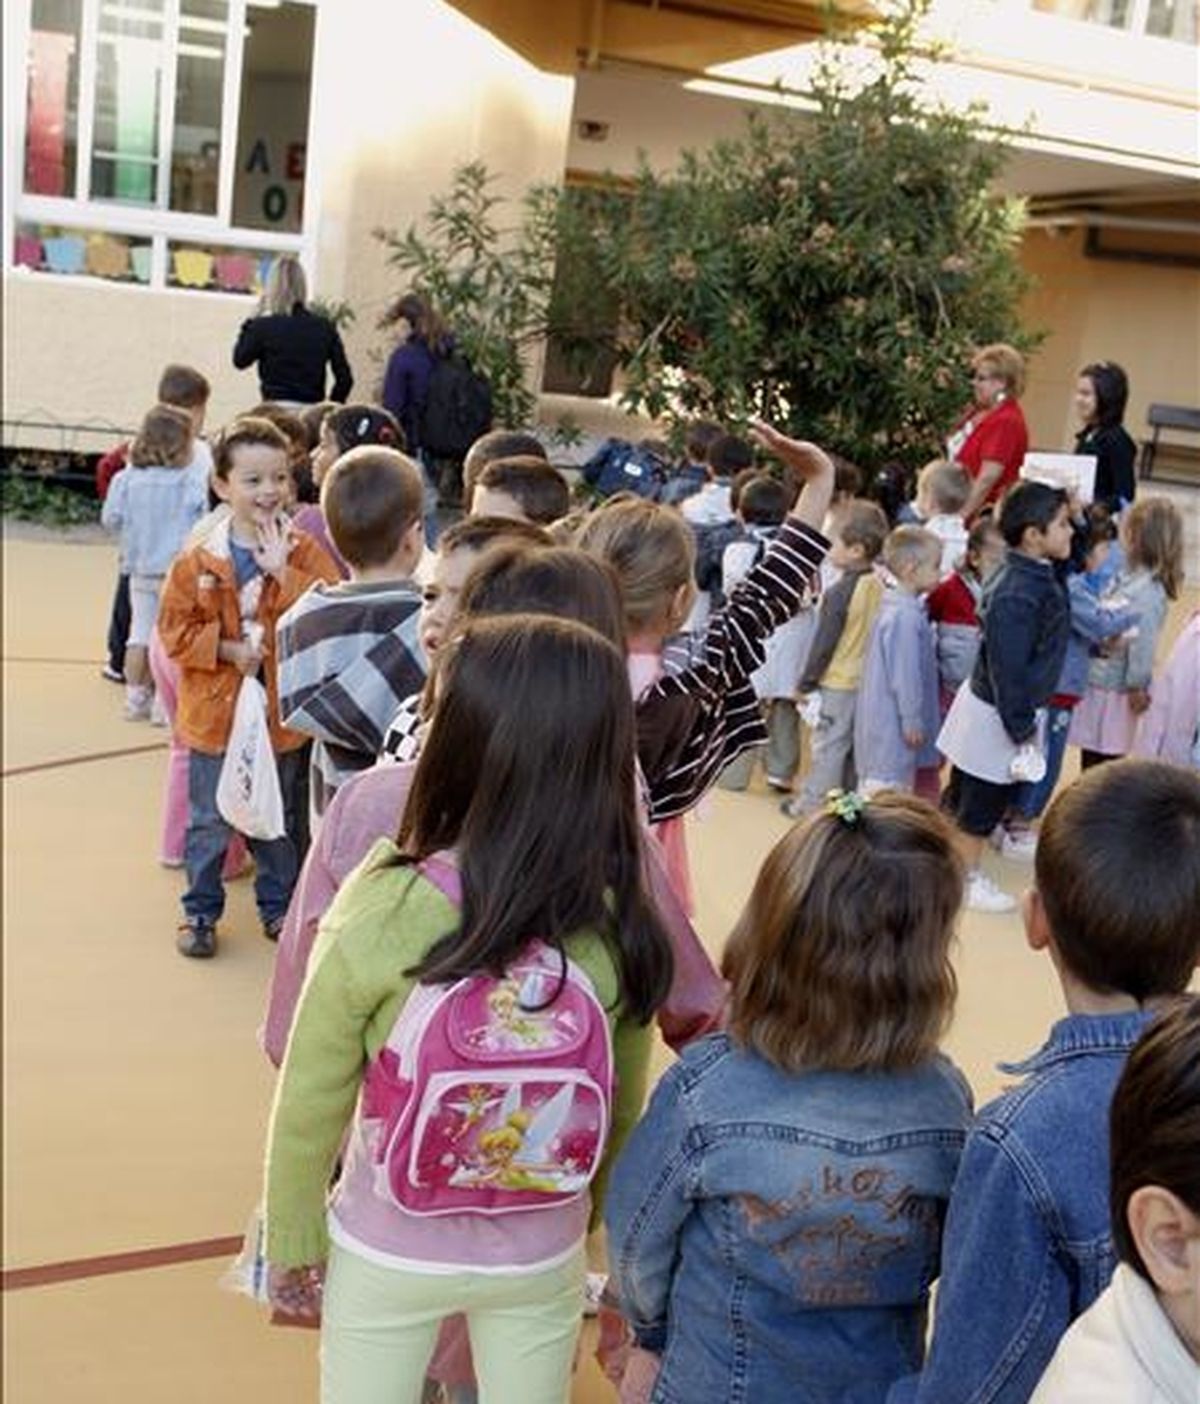 Varios niños llegan al colegio público Juan de la Cierva, en el distrito madrileño de Villaverde, para empezar sus clases en el primer día del curso escolar 2008-2009. EFE/Archivo